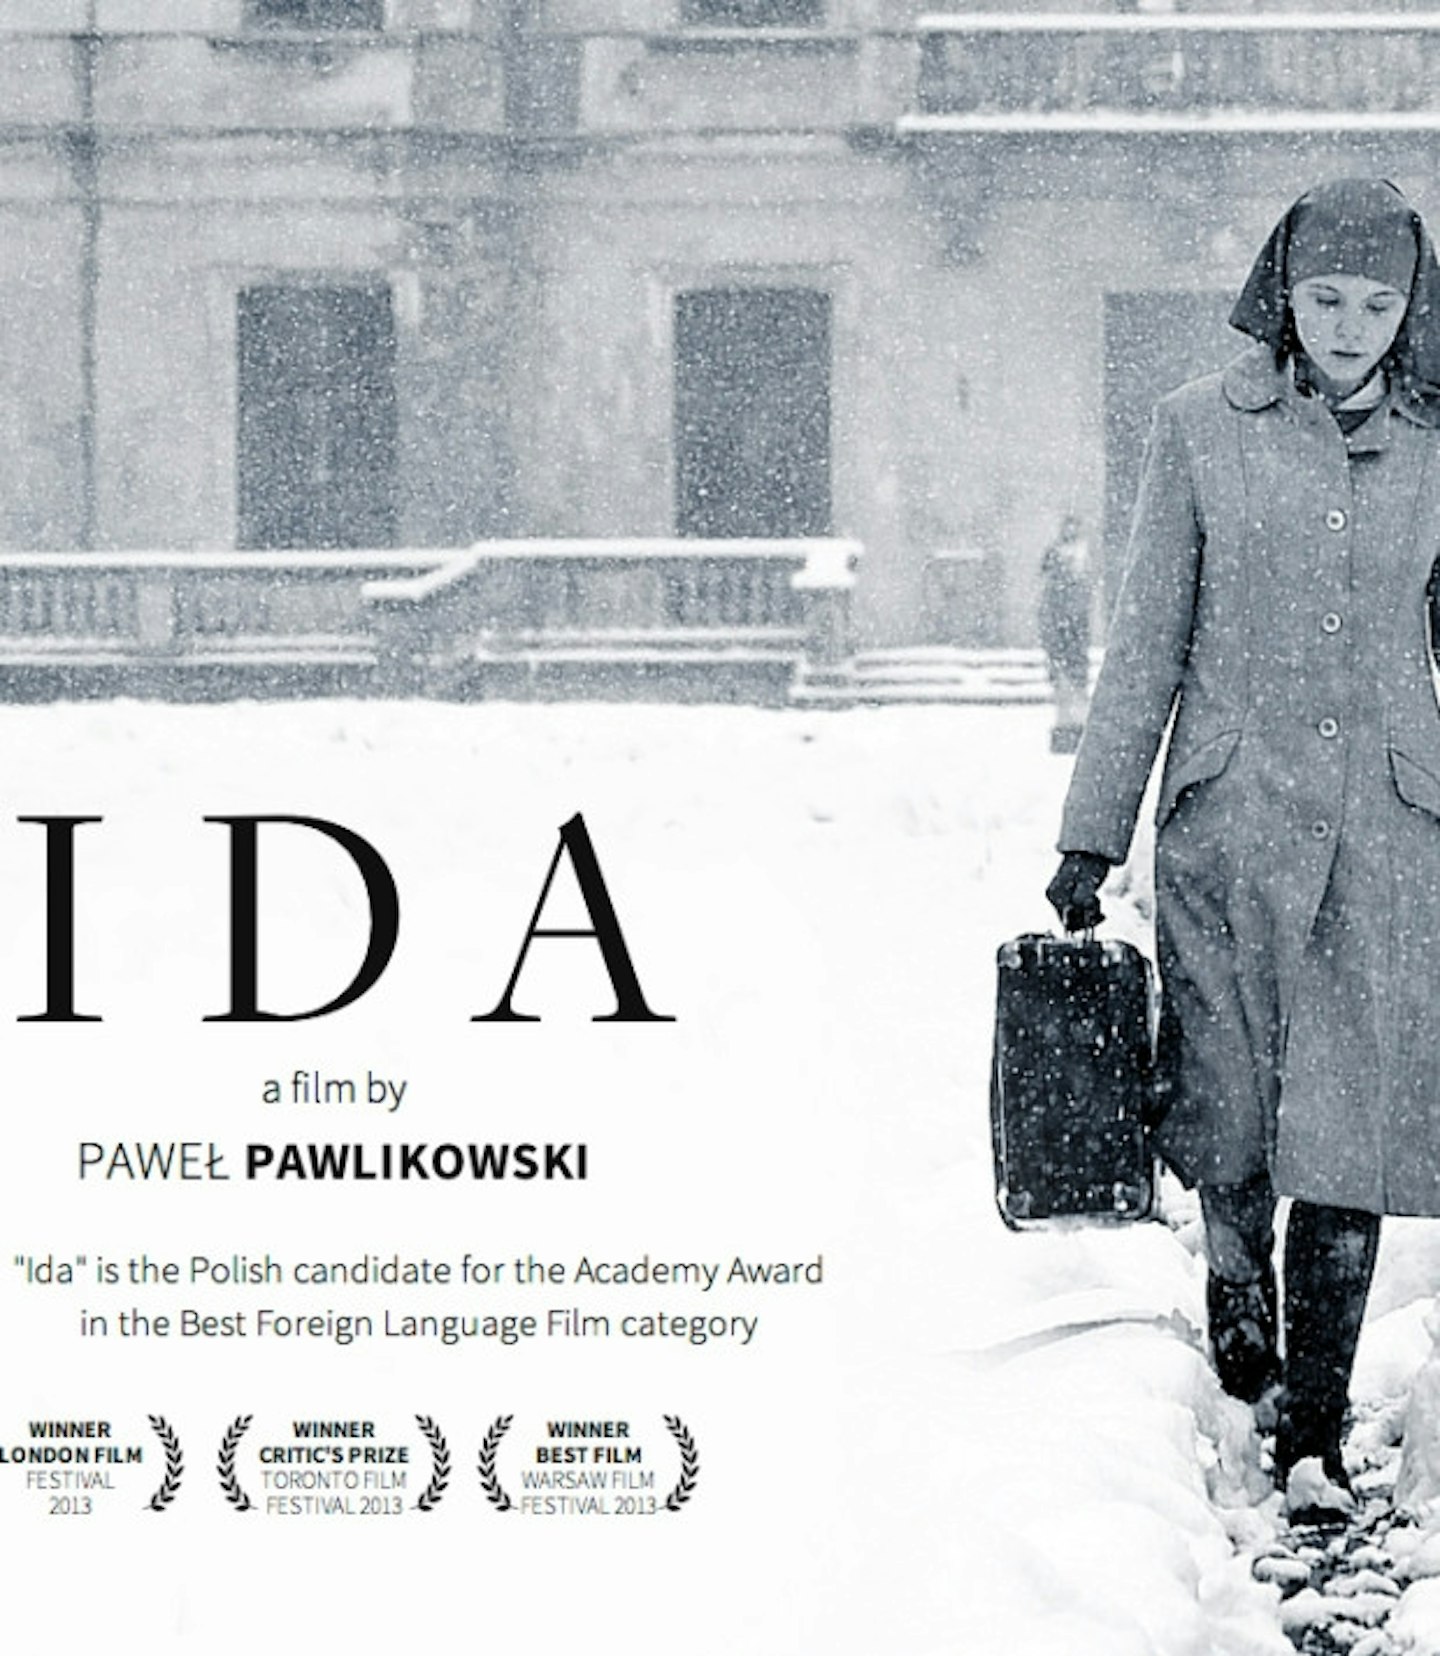 Best Foreign Film winner: Pawel Pawlikowski's Ida.